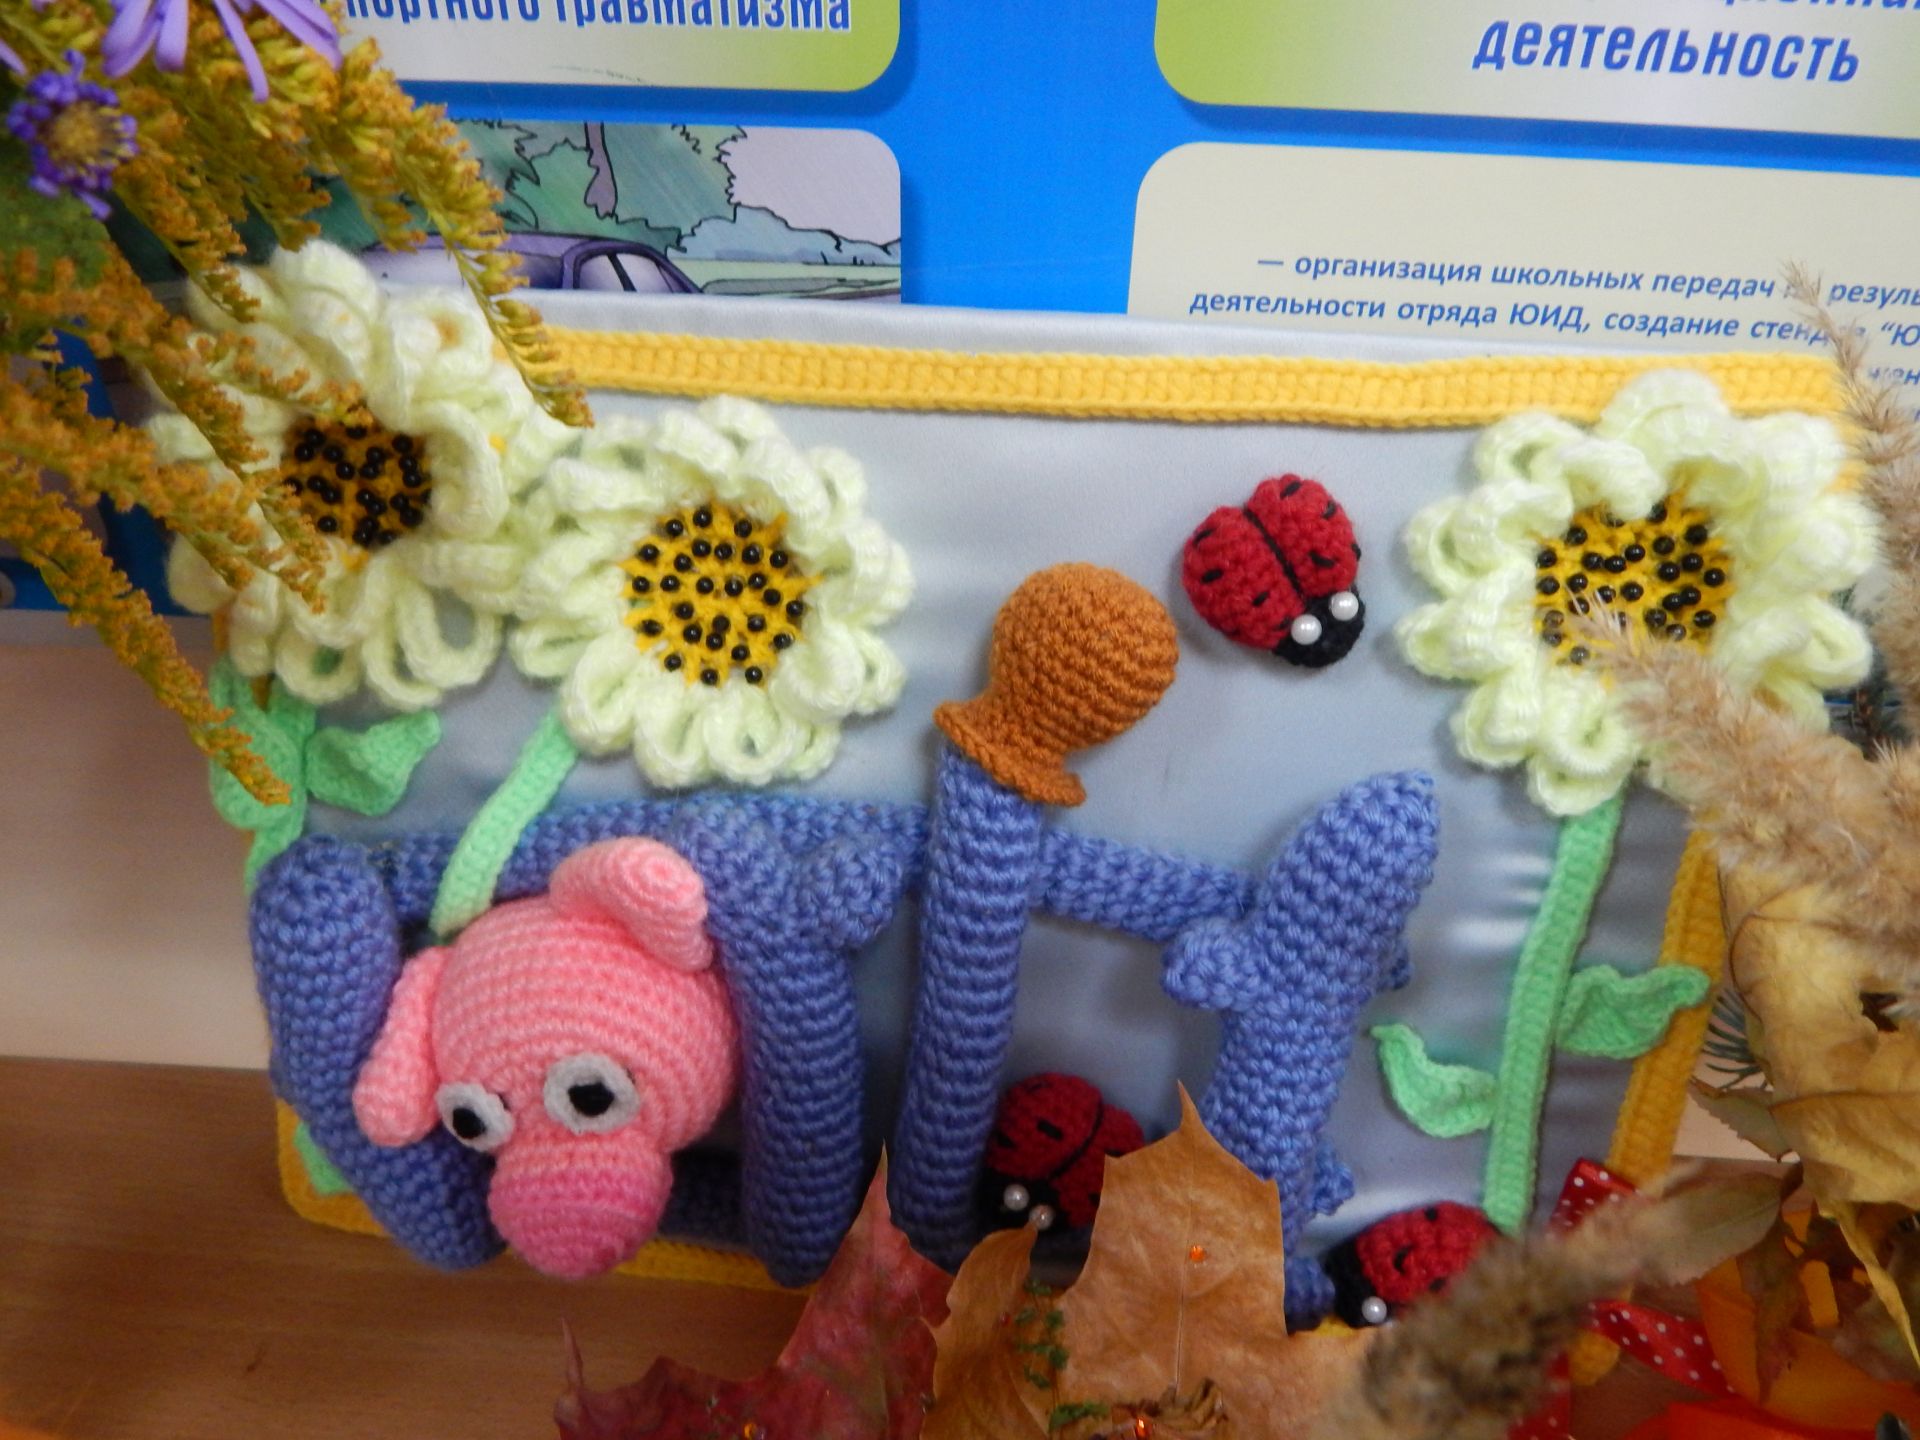 Ученики Камскополянской школы №1 поздравили старшее поколение своим творчеством